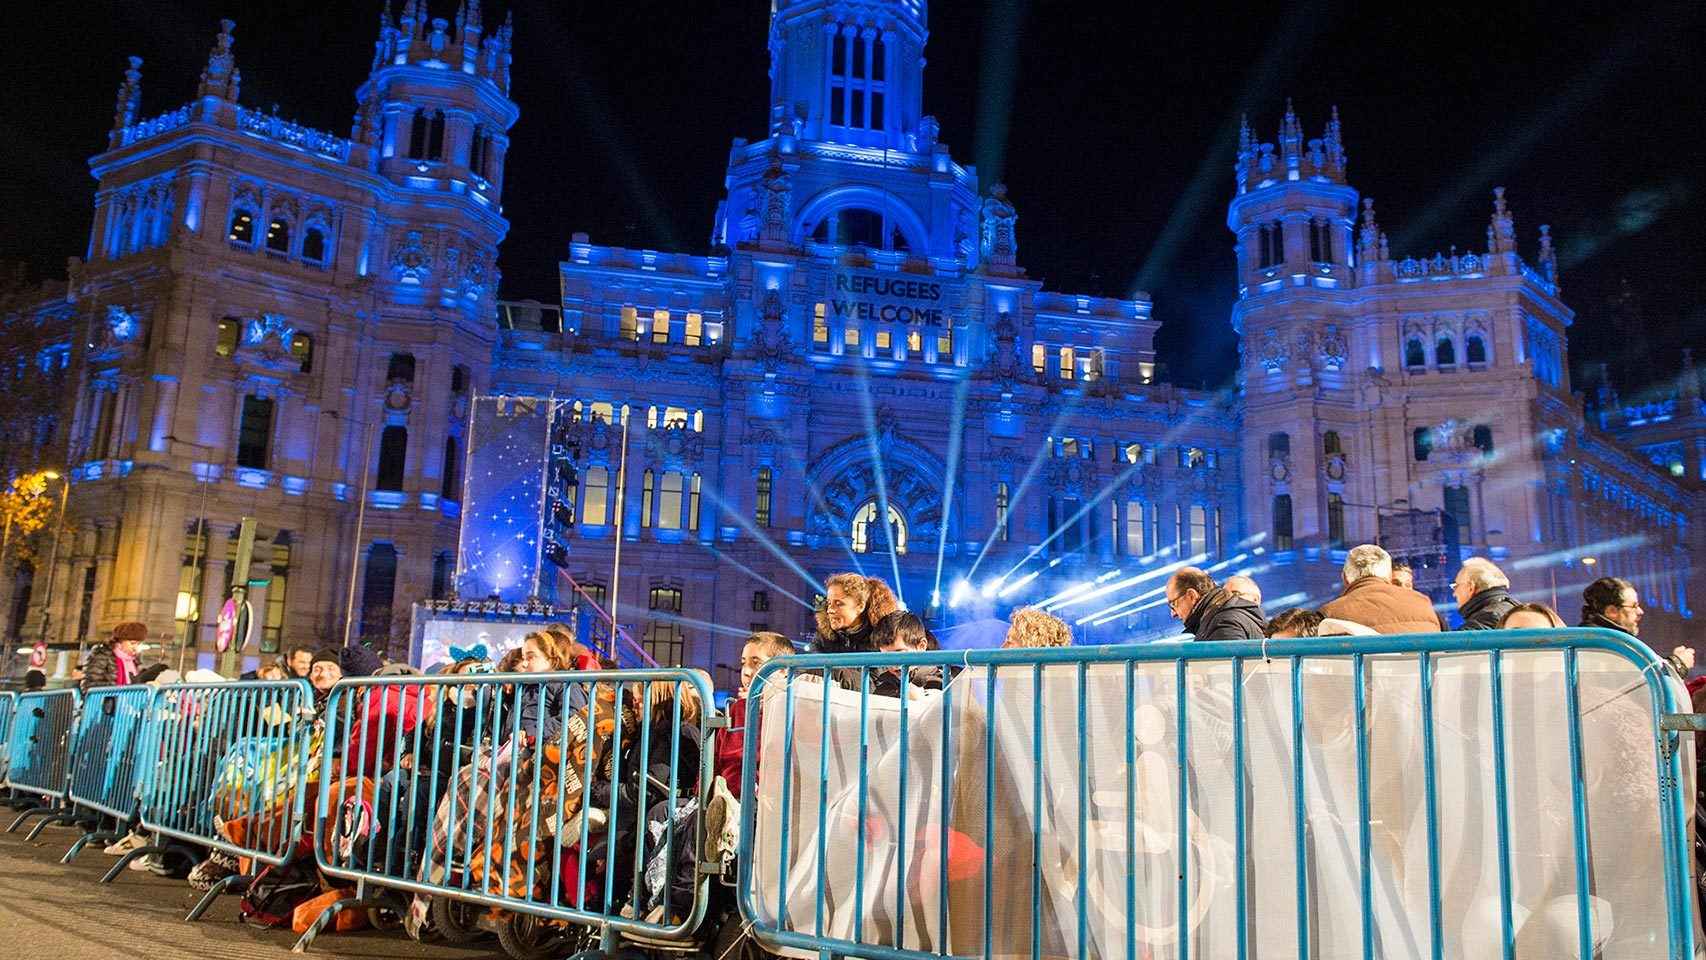 La primera fila de la cabalgata en Madrid, reservada para discapacitados